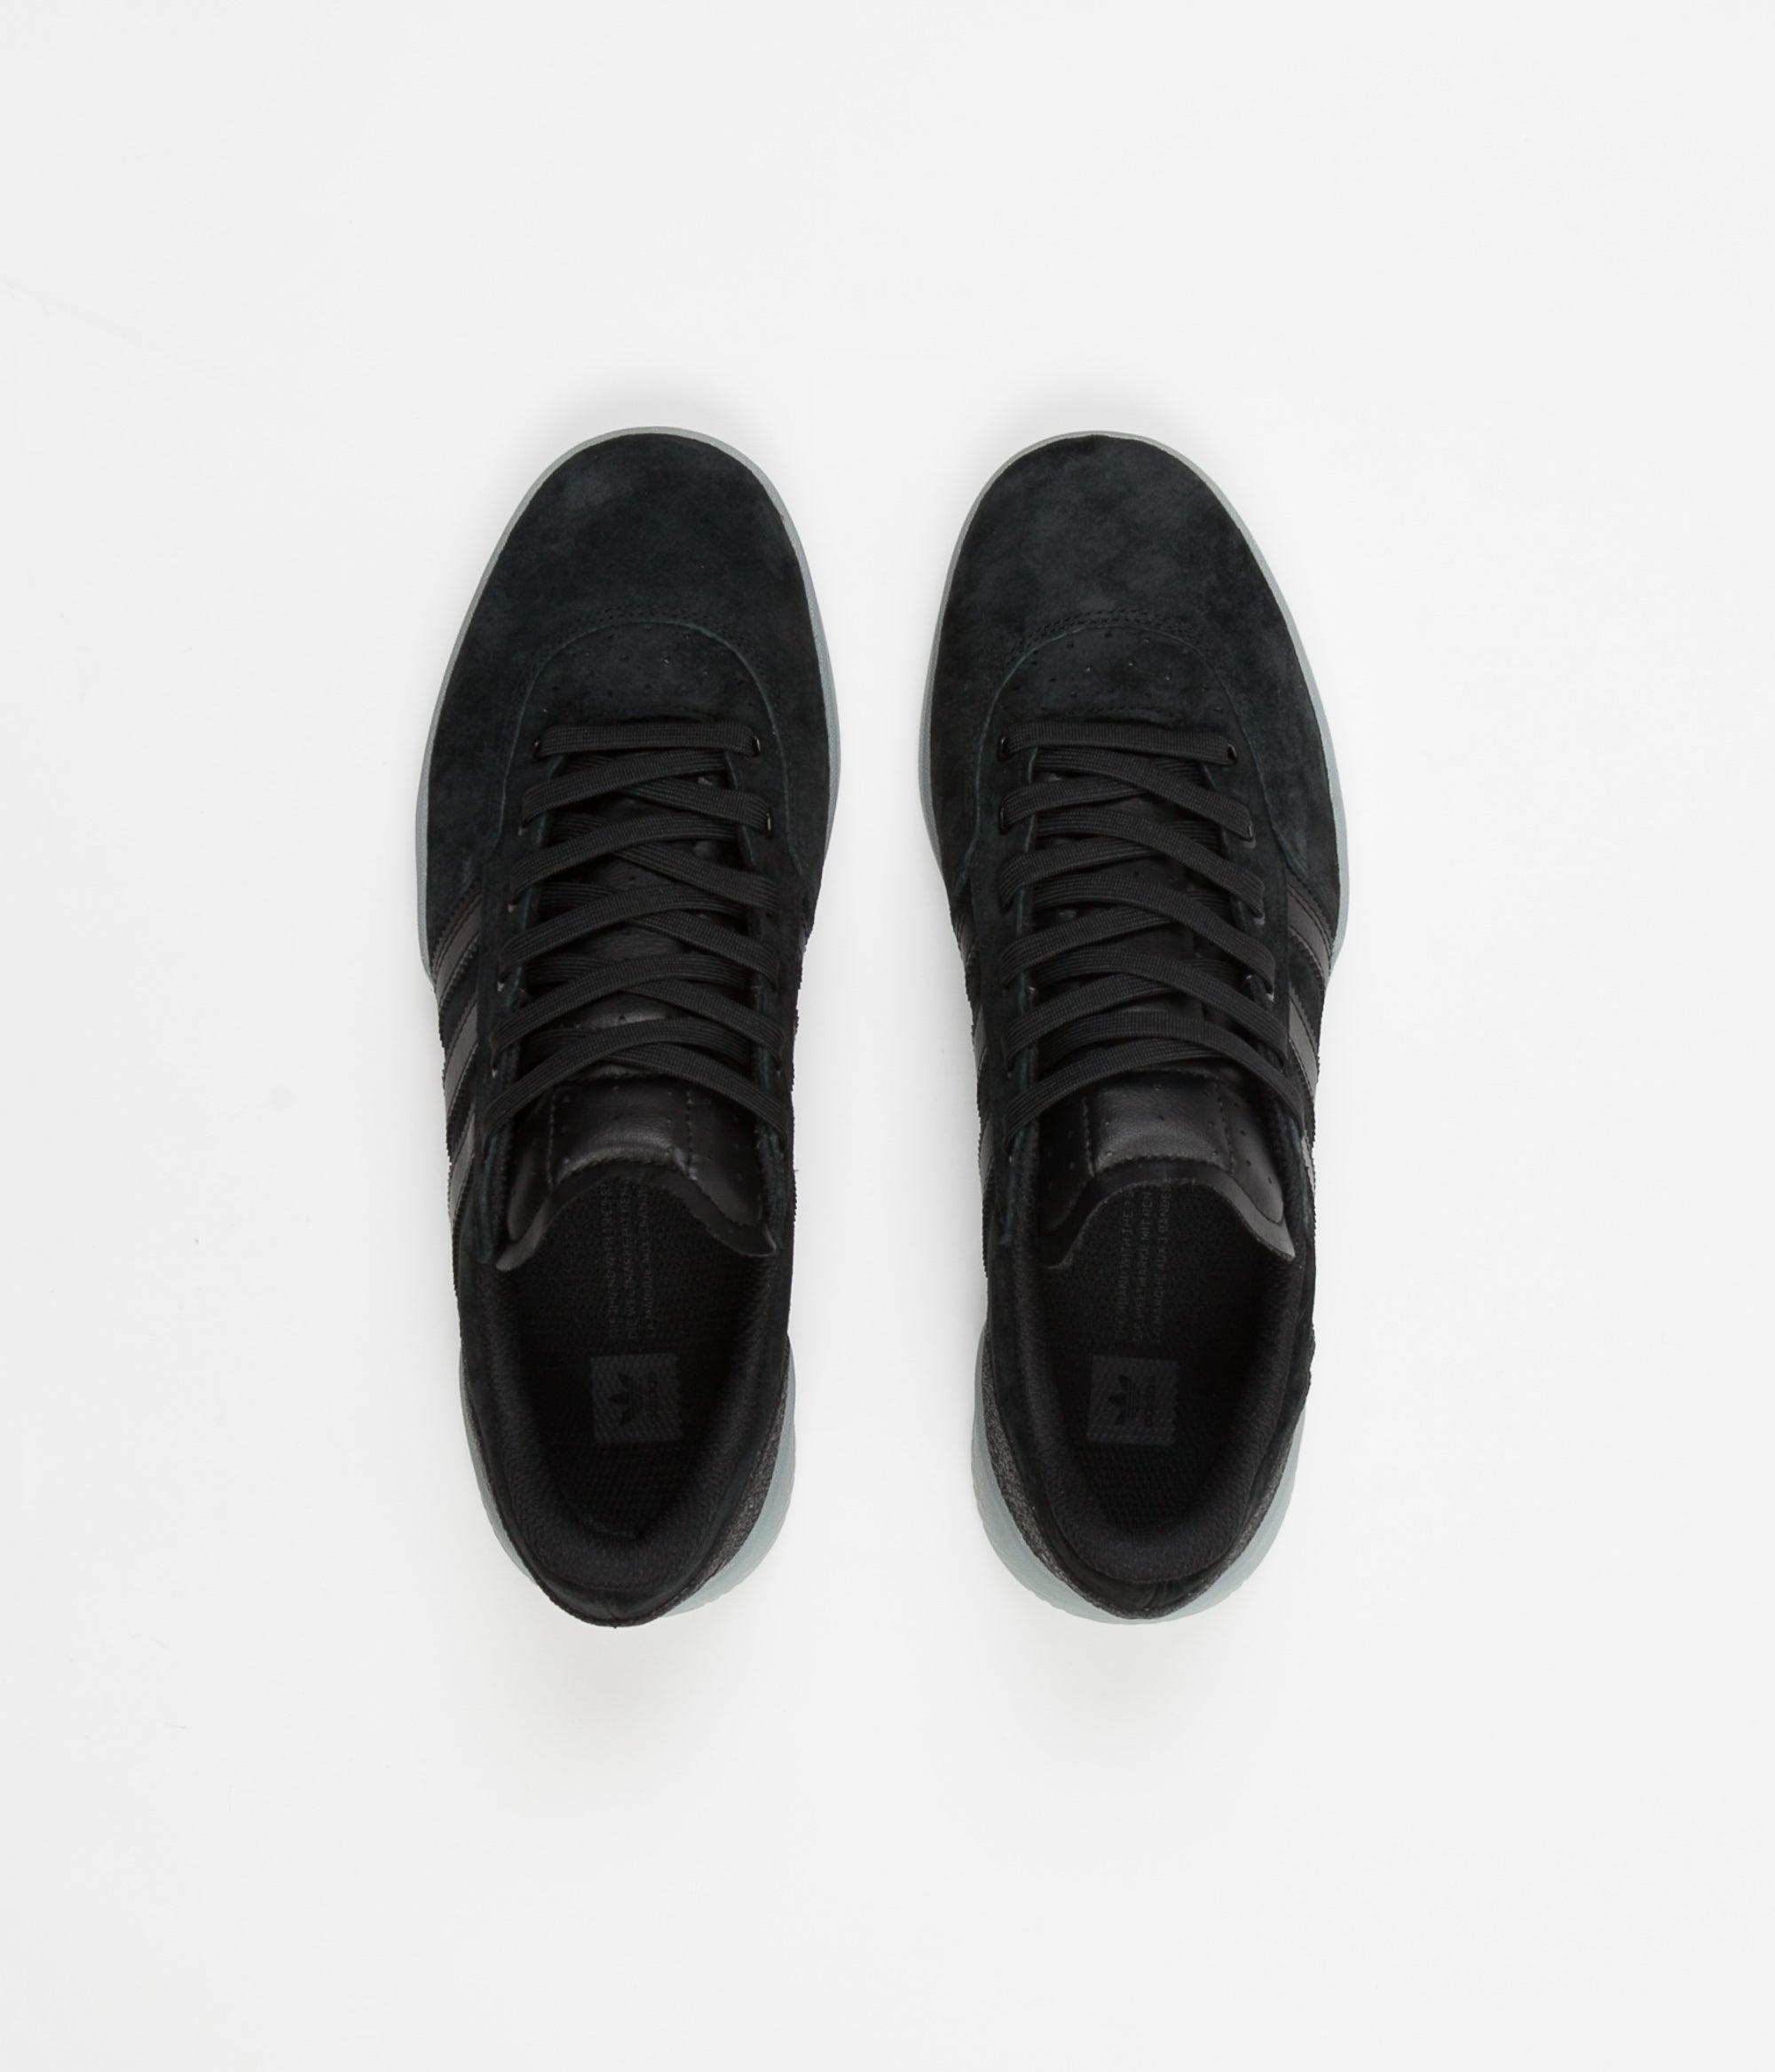 adidas black colour shoes